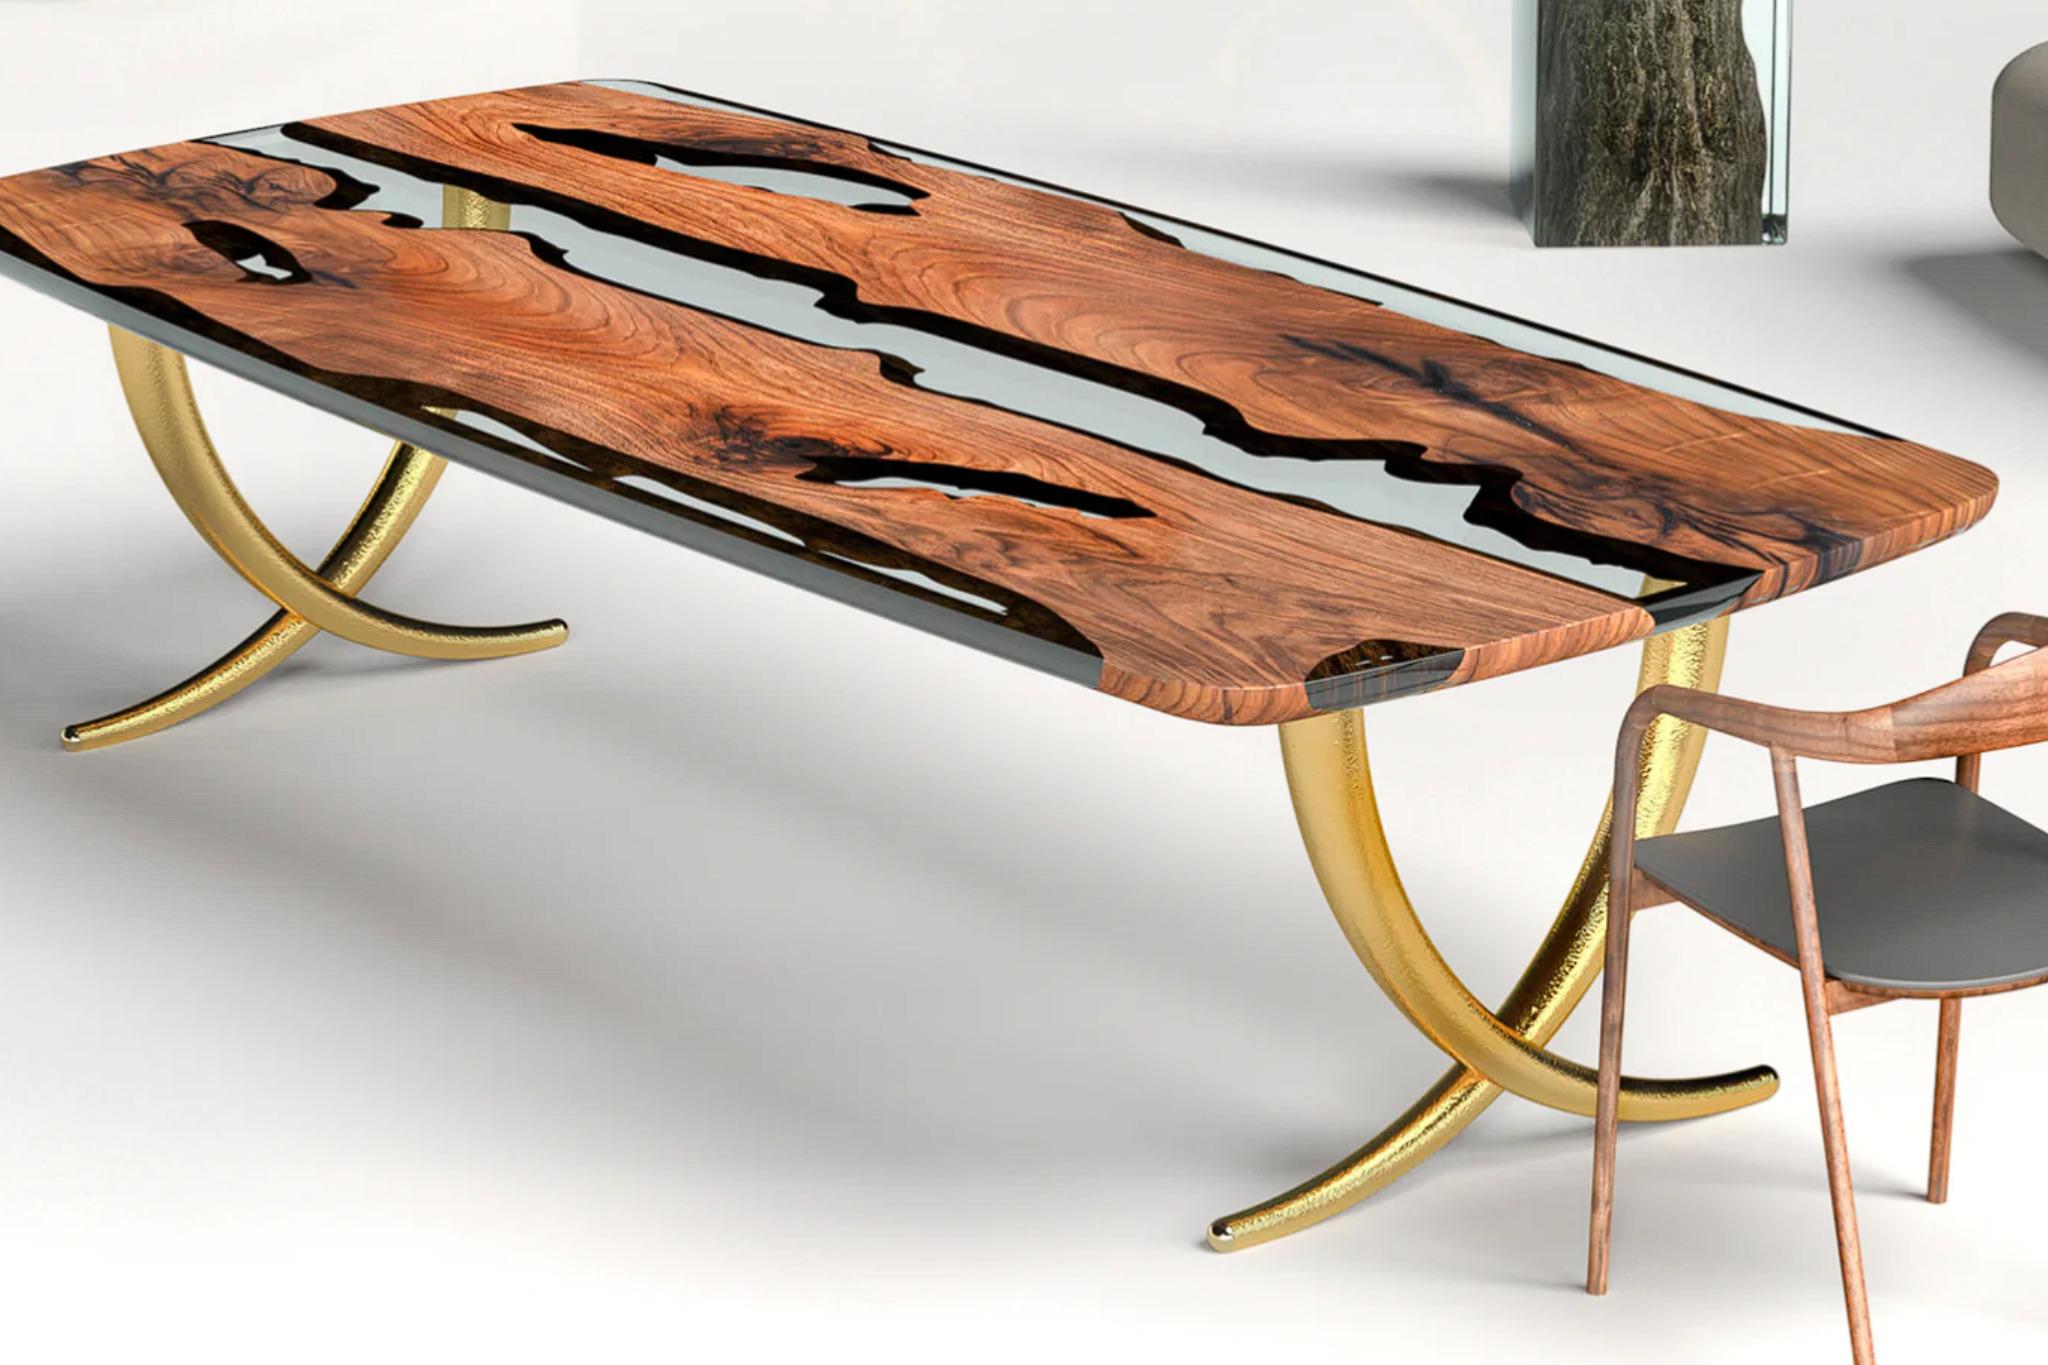 La table est fabriquée en bois massif de noyer d'Anatolie, réputé pour sa solidité et sa durabilité. 

Ce qui rend cette table vraiment unique, c'est sa base, qui a été fabriquée à l'aide d'environ 40 000 coups de marteau, ce qui en fait une pièce